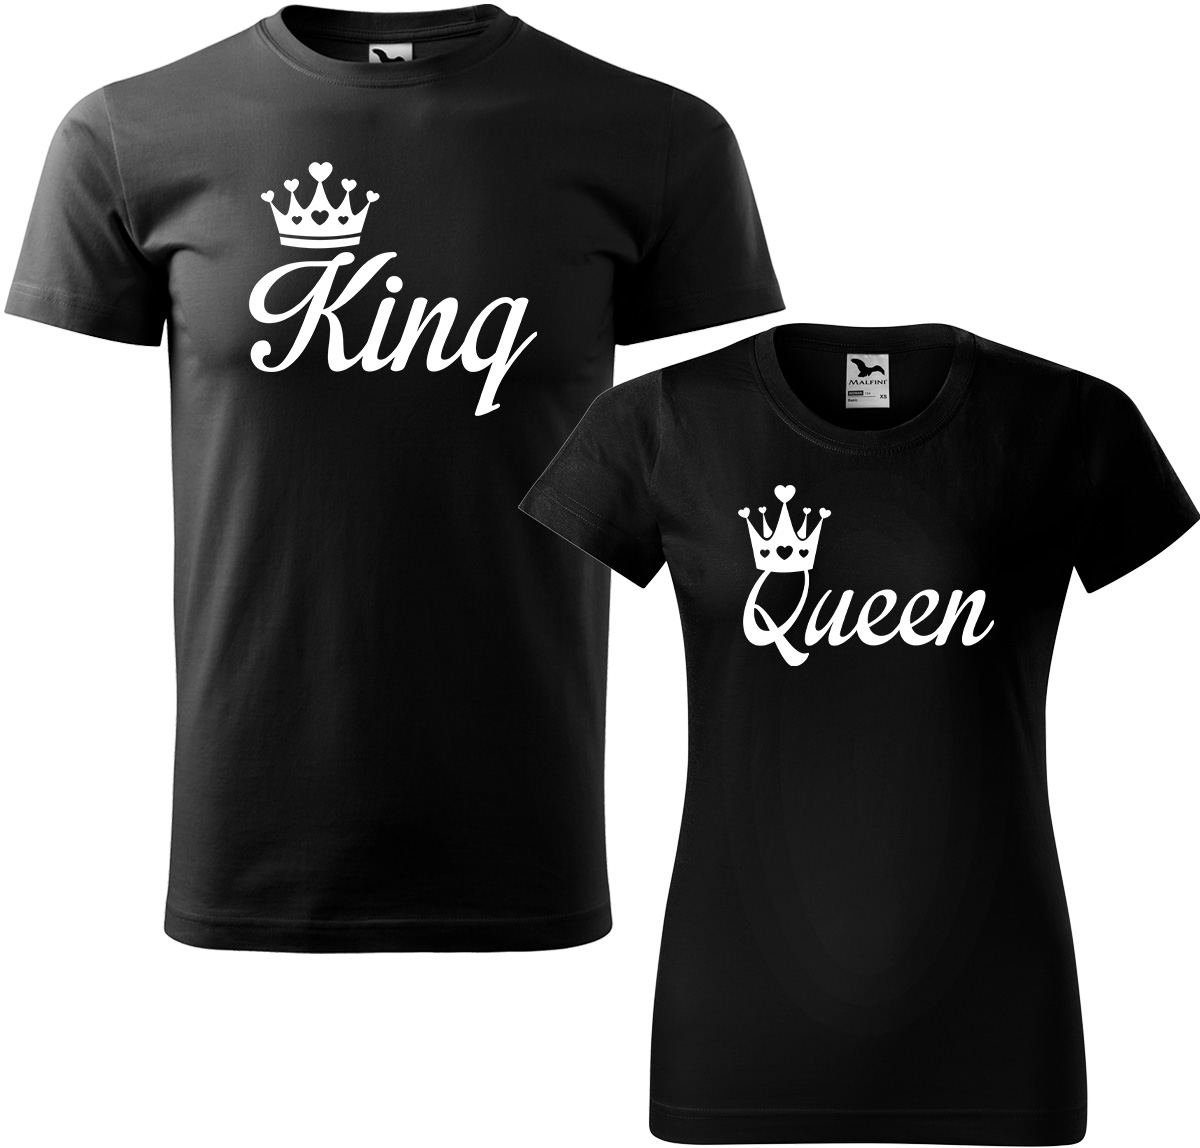 Trička pro páry - King a queen Barva: Černá (01), Velikost dámské tričko: S, Velikost pánské tričko: L